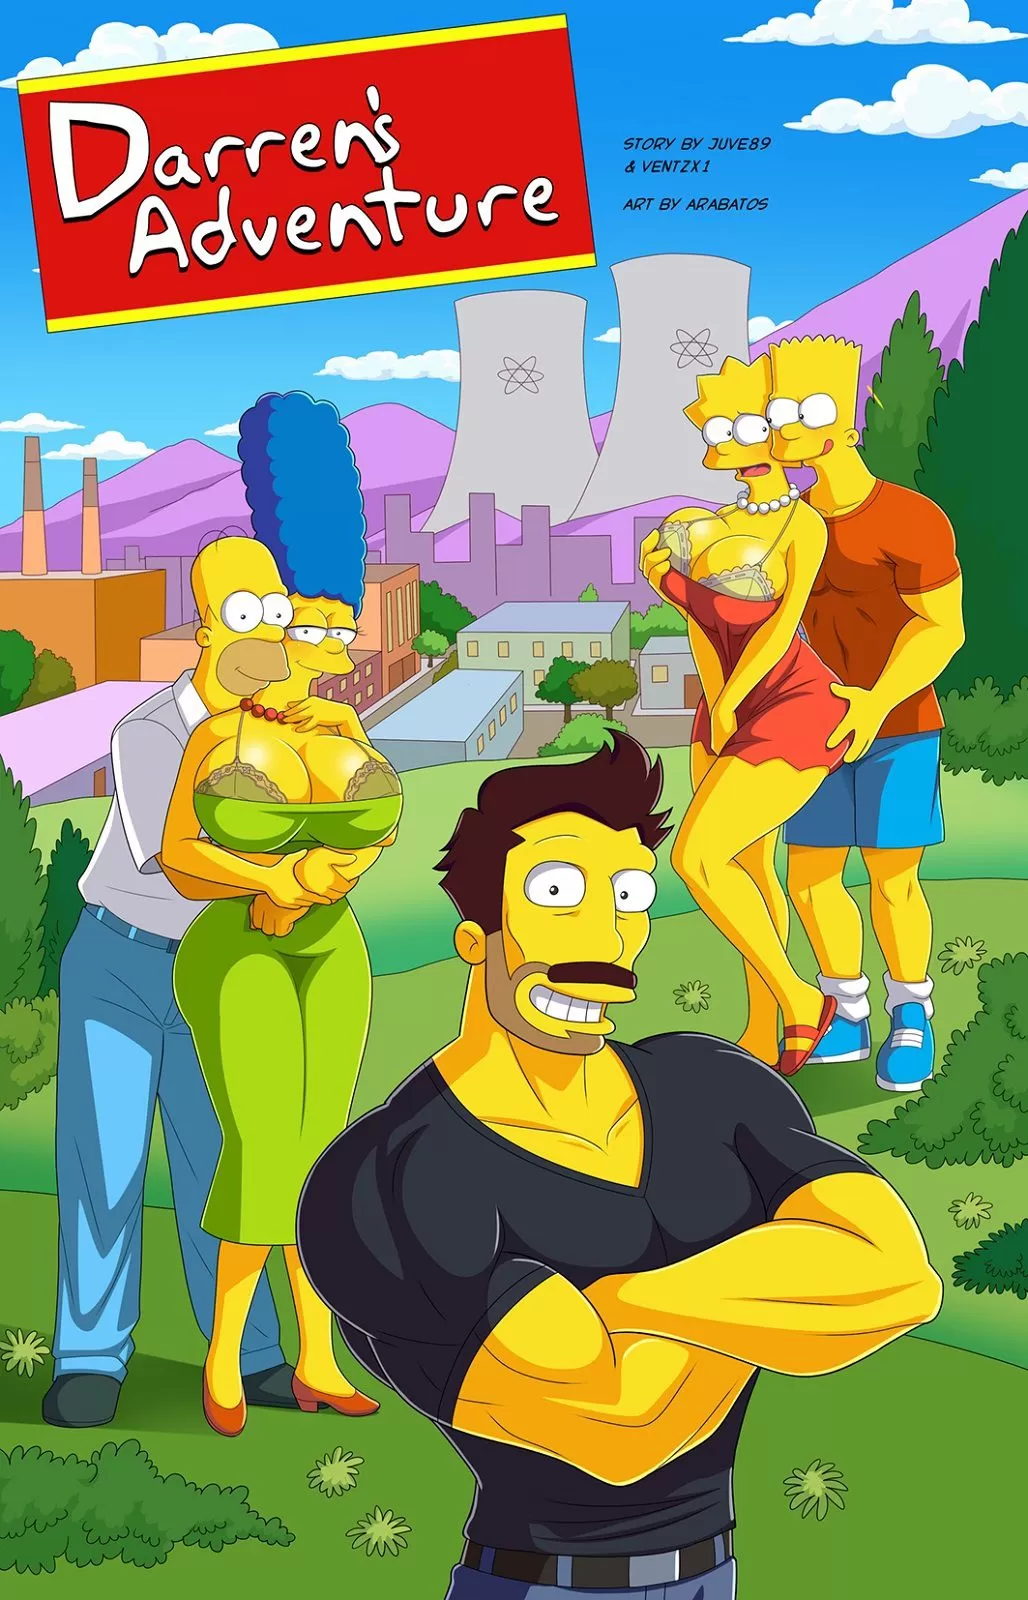 Darren’s Adventure (The Simpsons) [Arabatos]